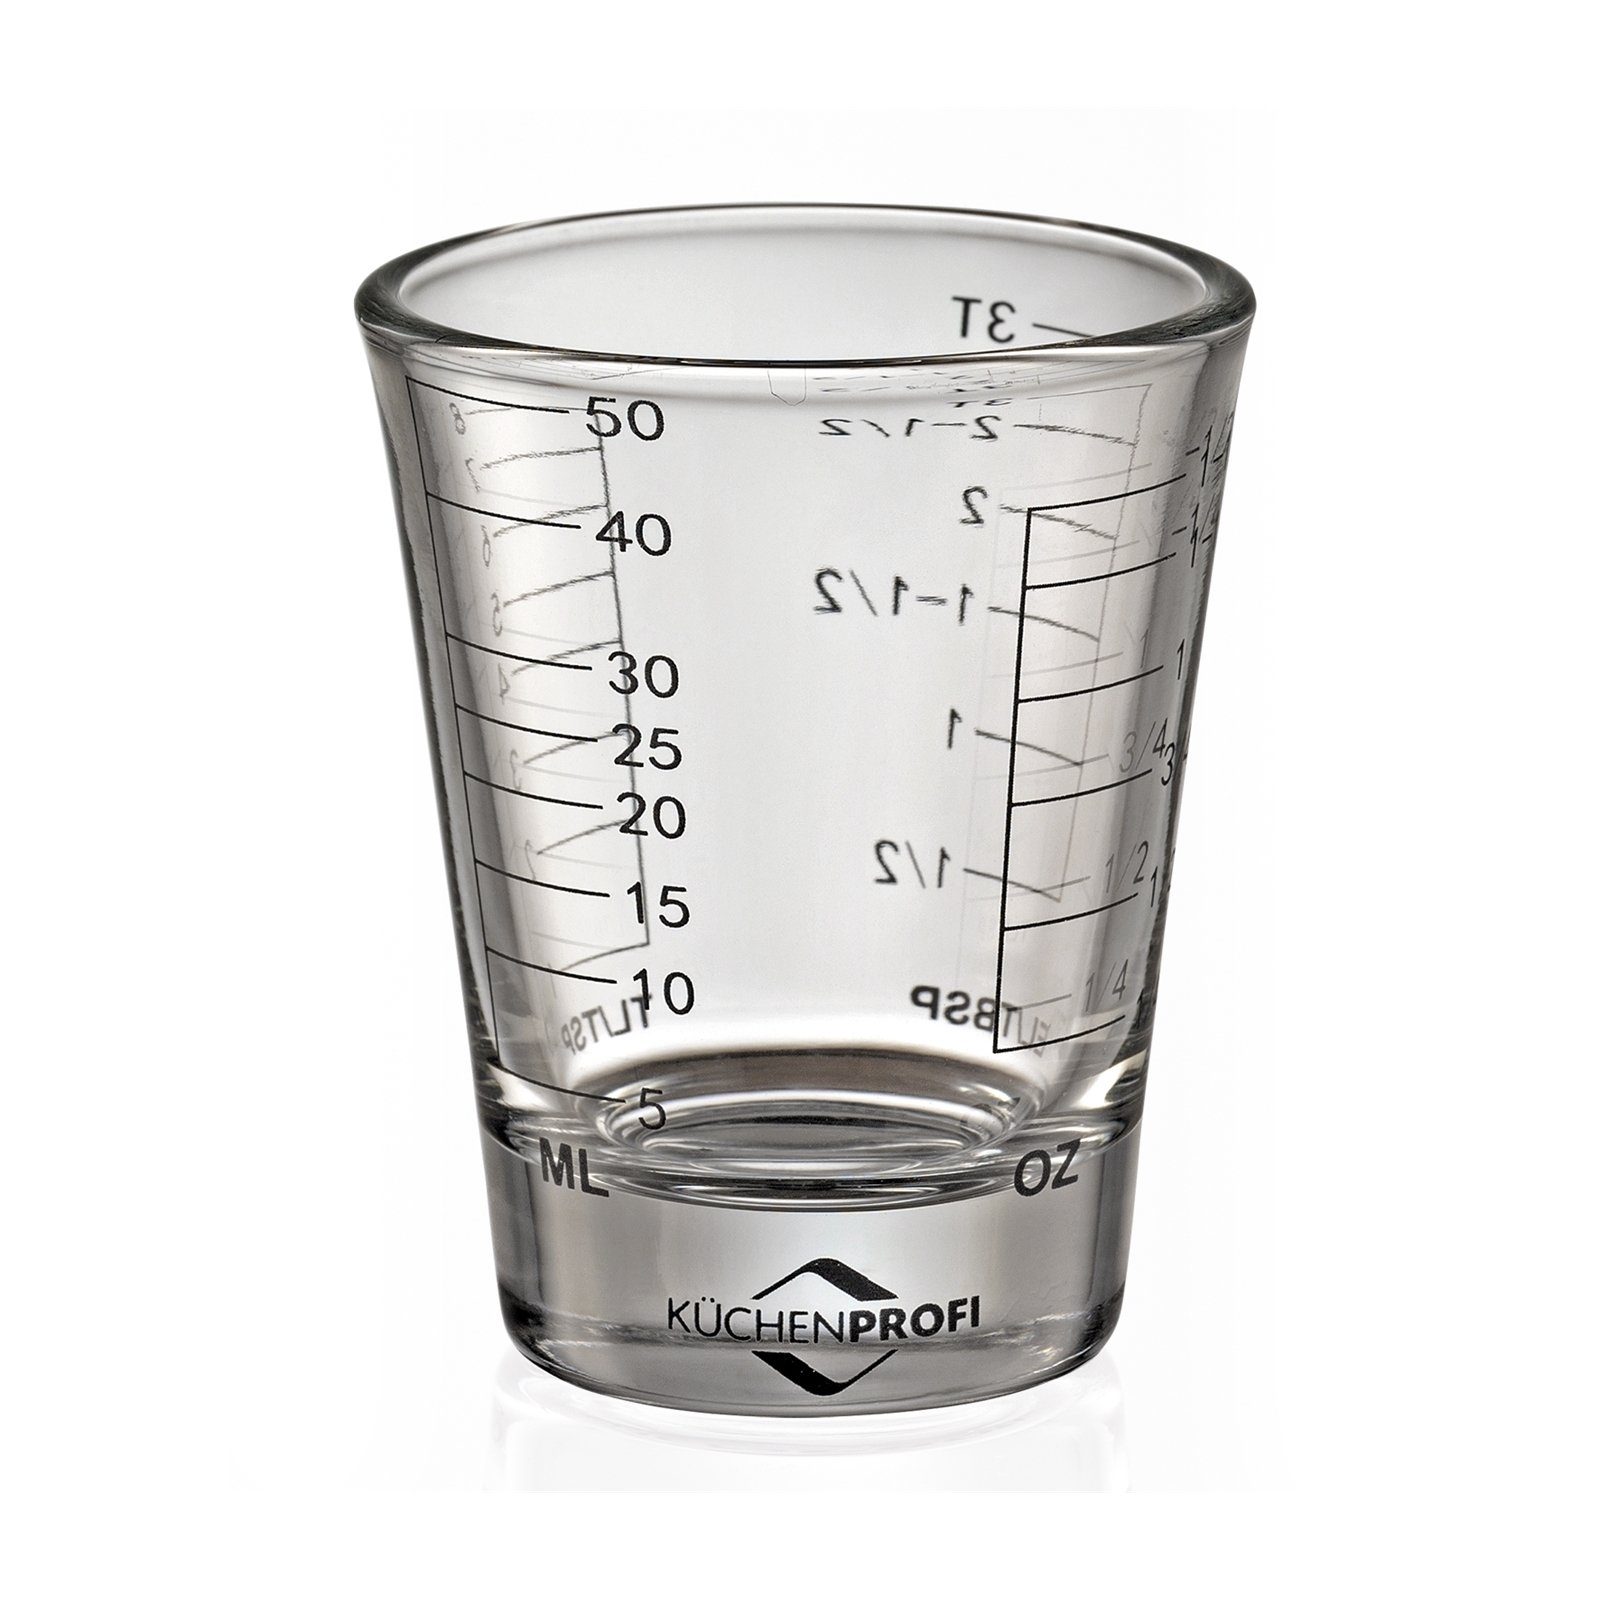 Messbecher 6 Höhe Glas, Maße Mini-Messbecher Inhalt Skala mit Küchenprofi 50ml, 5 bis 0,05 Liter cm, Ø cm,